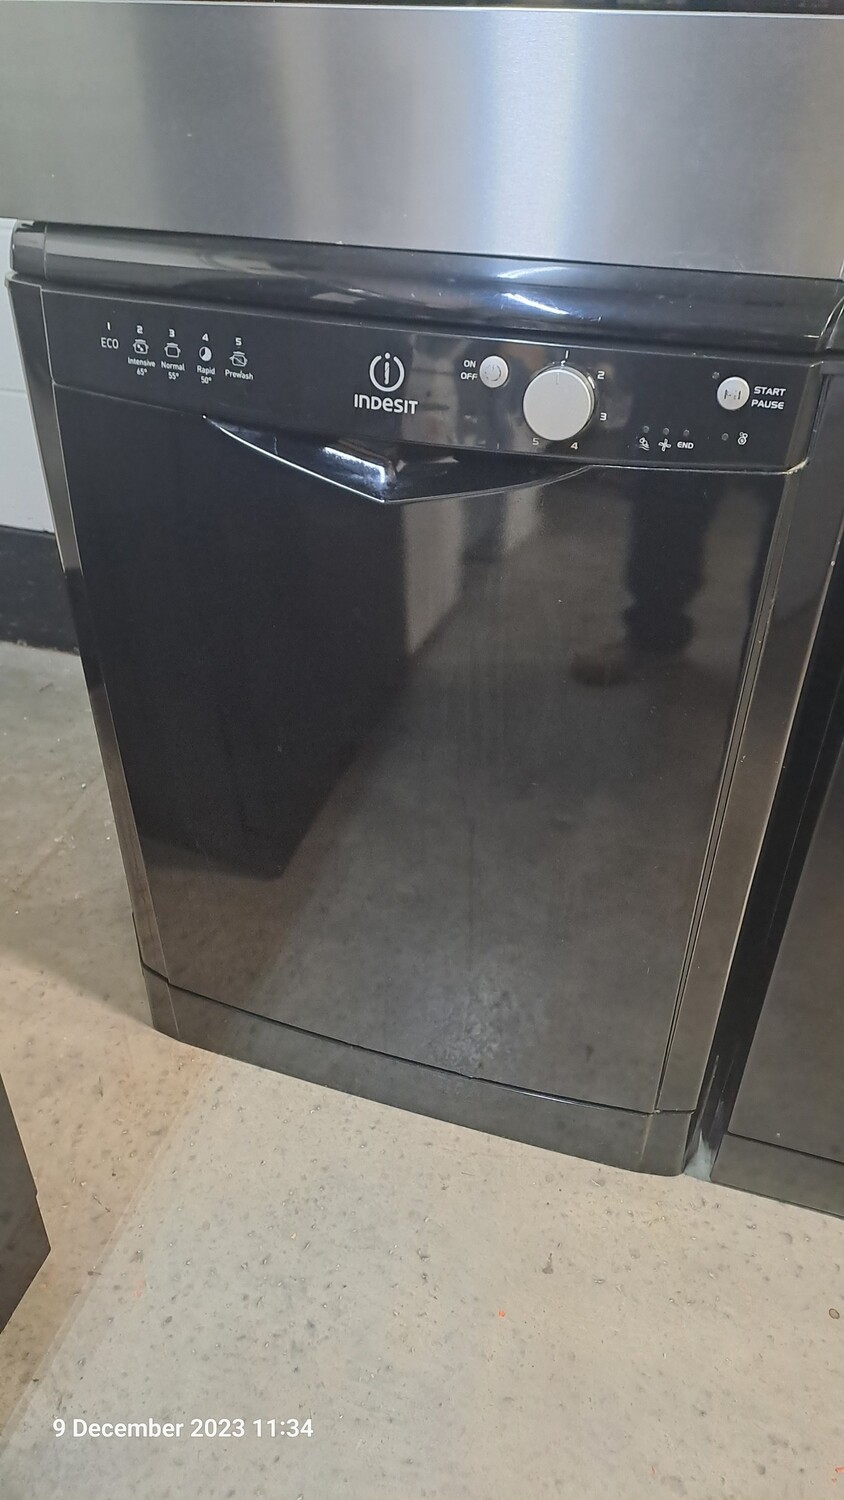 Indesit DFG15B1KUK 60cm Freestanding Full Size Dishwasher in Black Refurbished 